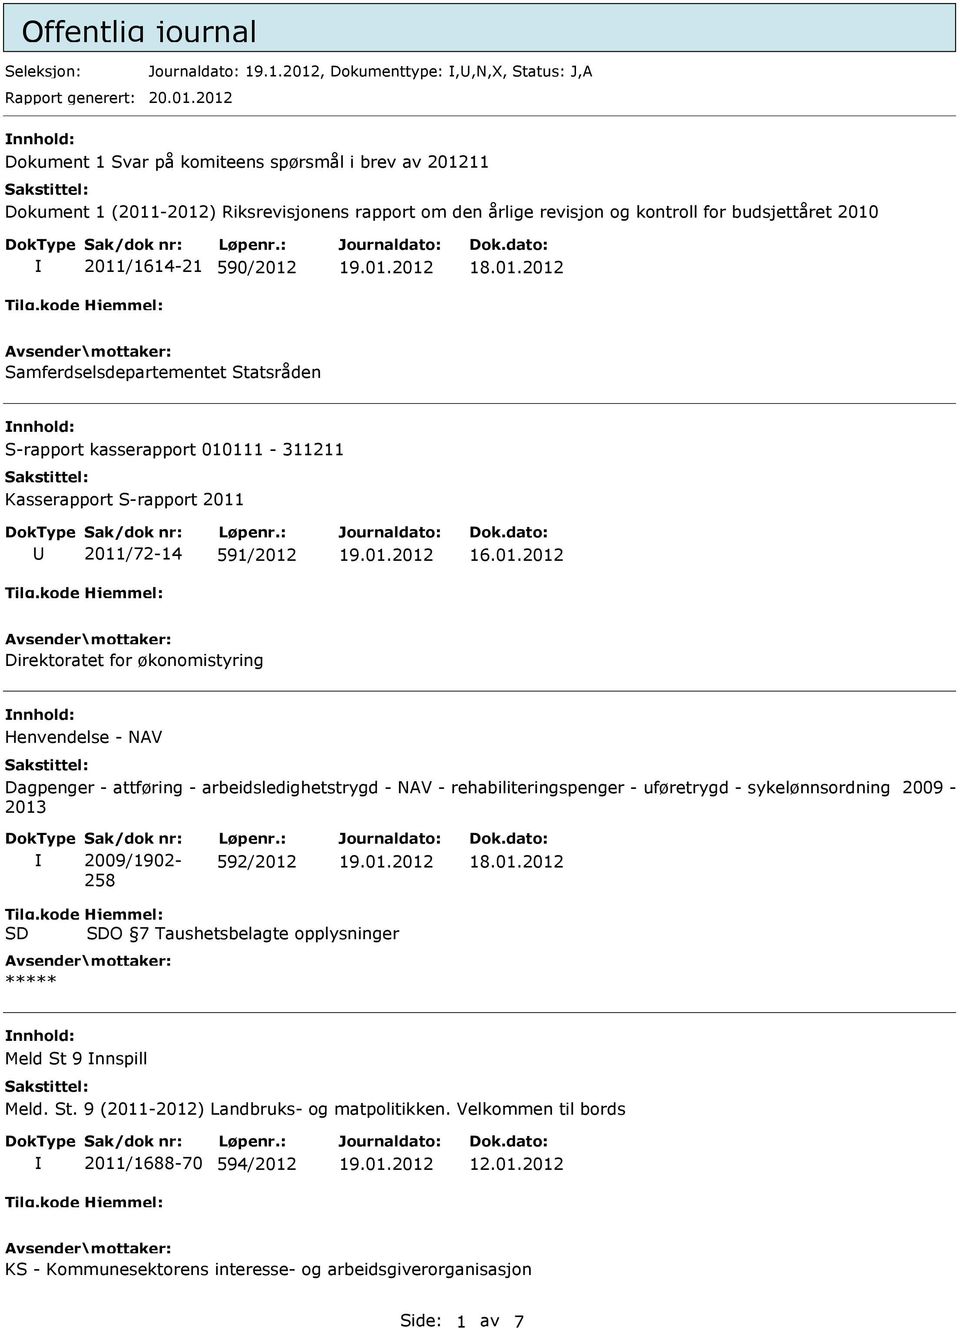 2012 Dokument 1 Svar på komiteens spørsmål i brev av 201211 Dokument 1 (2011-2012) Riksrevisjonens rapport om den årlige revisjon og kontroll for budsjettåret 2010 2011/1614-21 590/2012